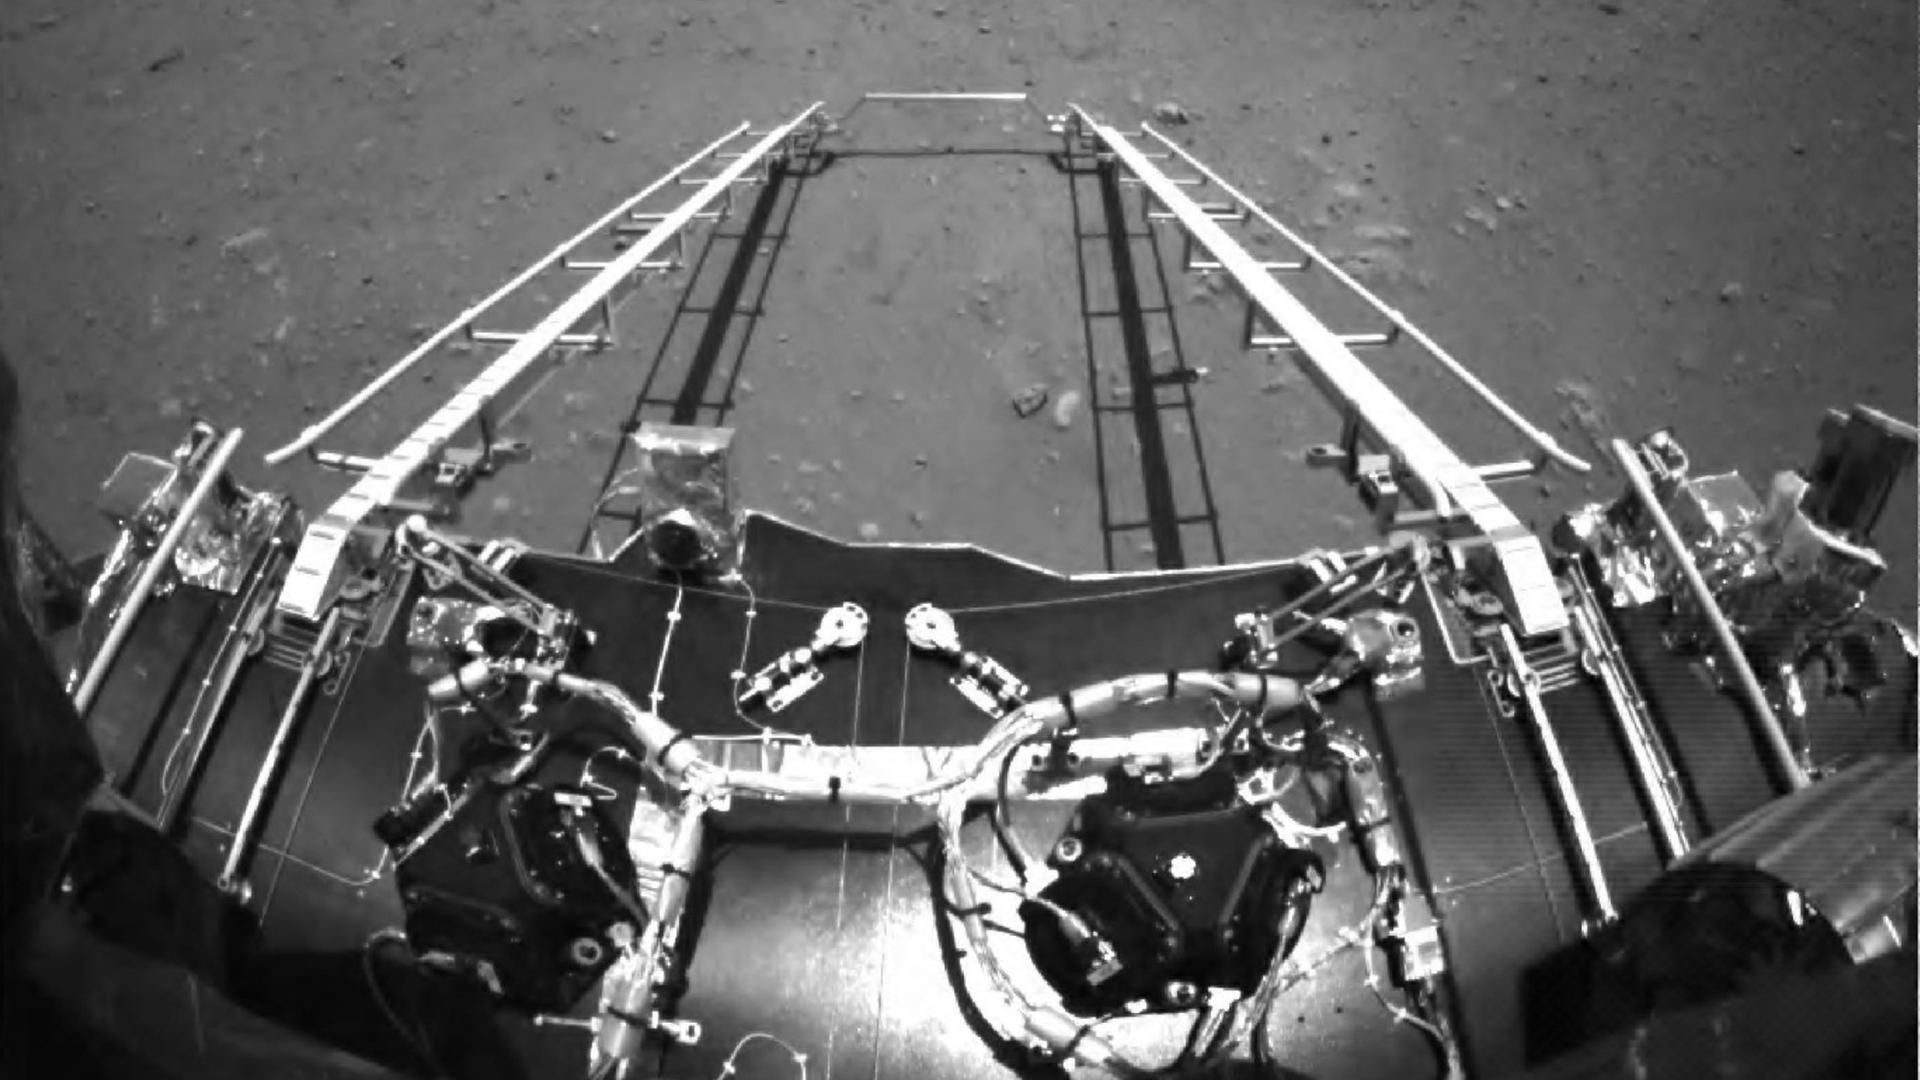 Das Bild hat der Rover vom Mars auf die Erde geschickt. 